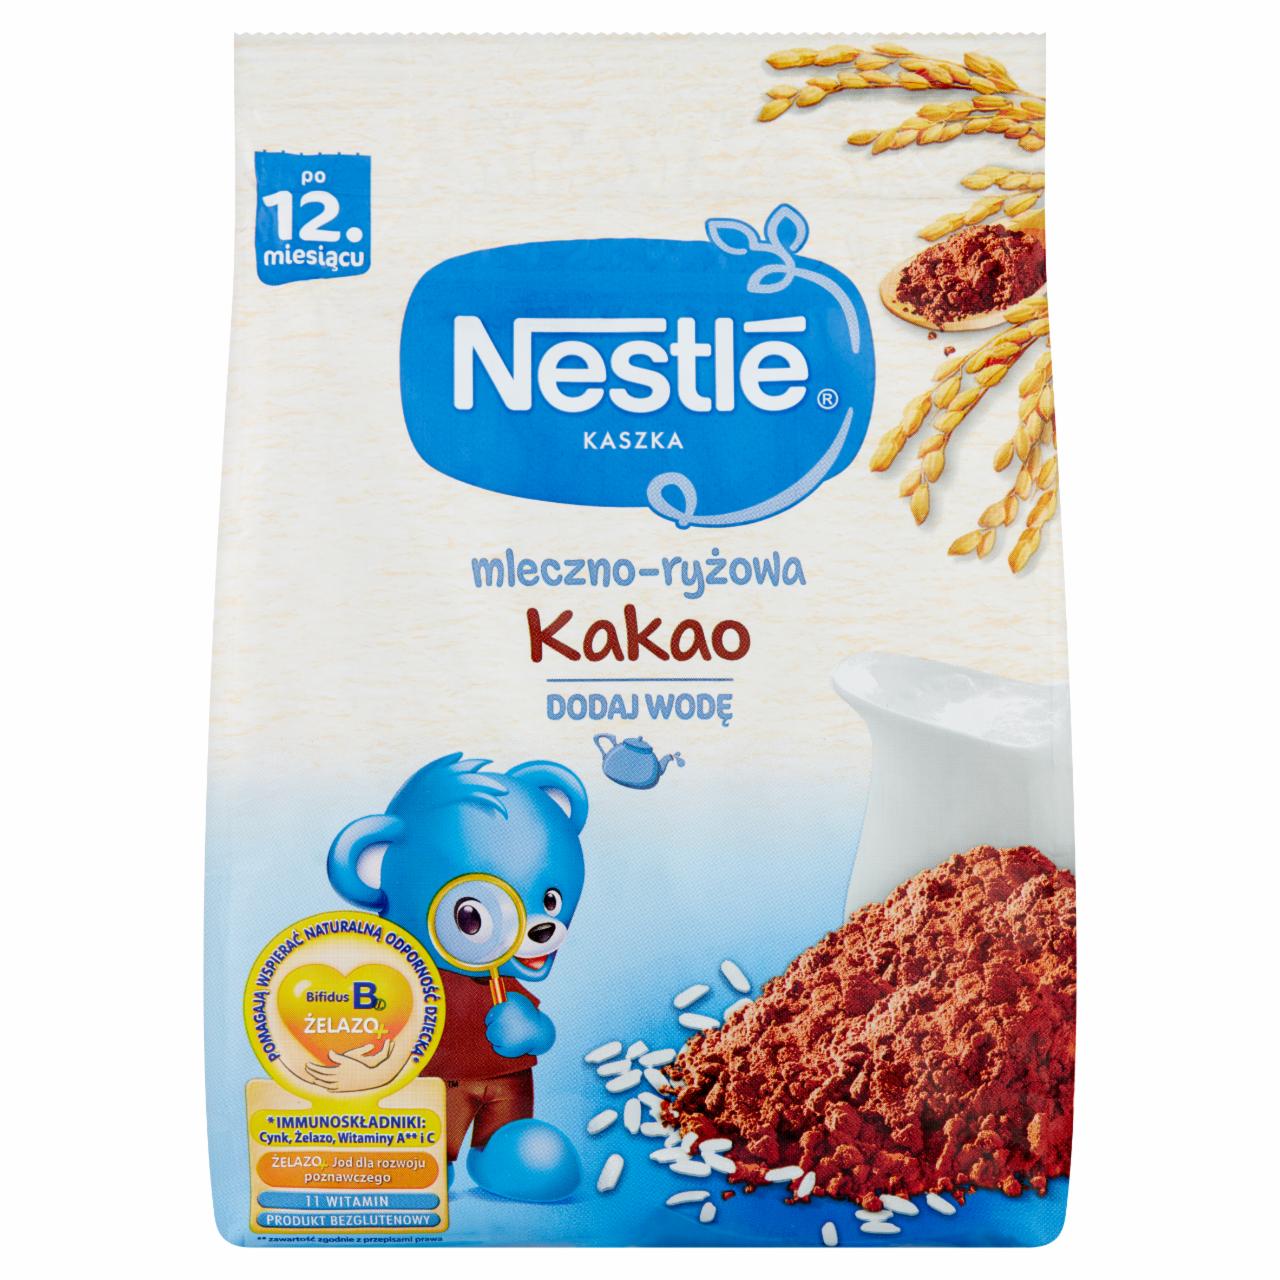 Zdjęcia - Nestlé Kaszka mleczno-ryżowa kakao dla dzieci po 12. miesiącu 230 g